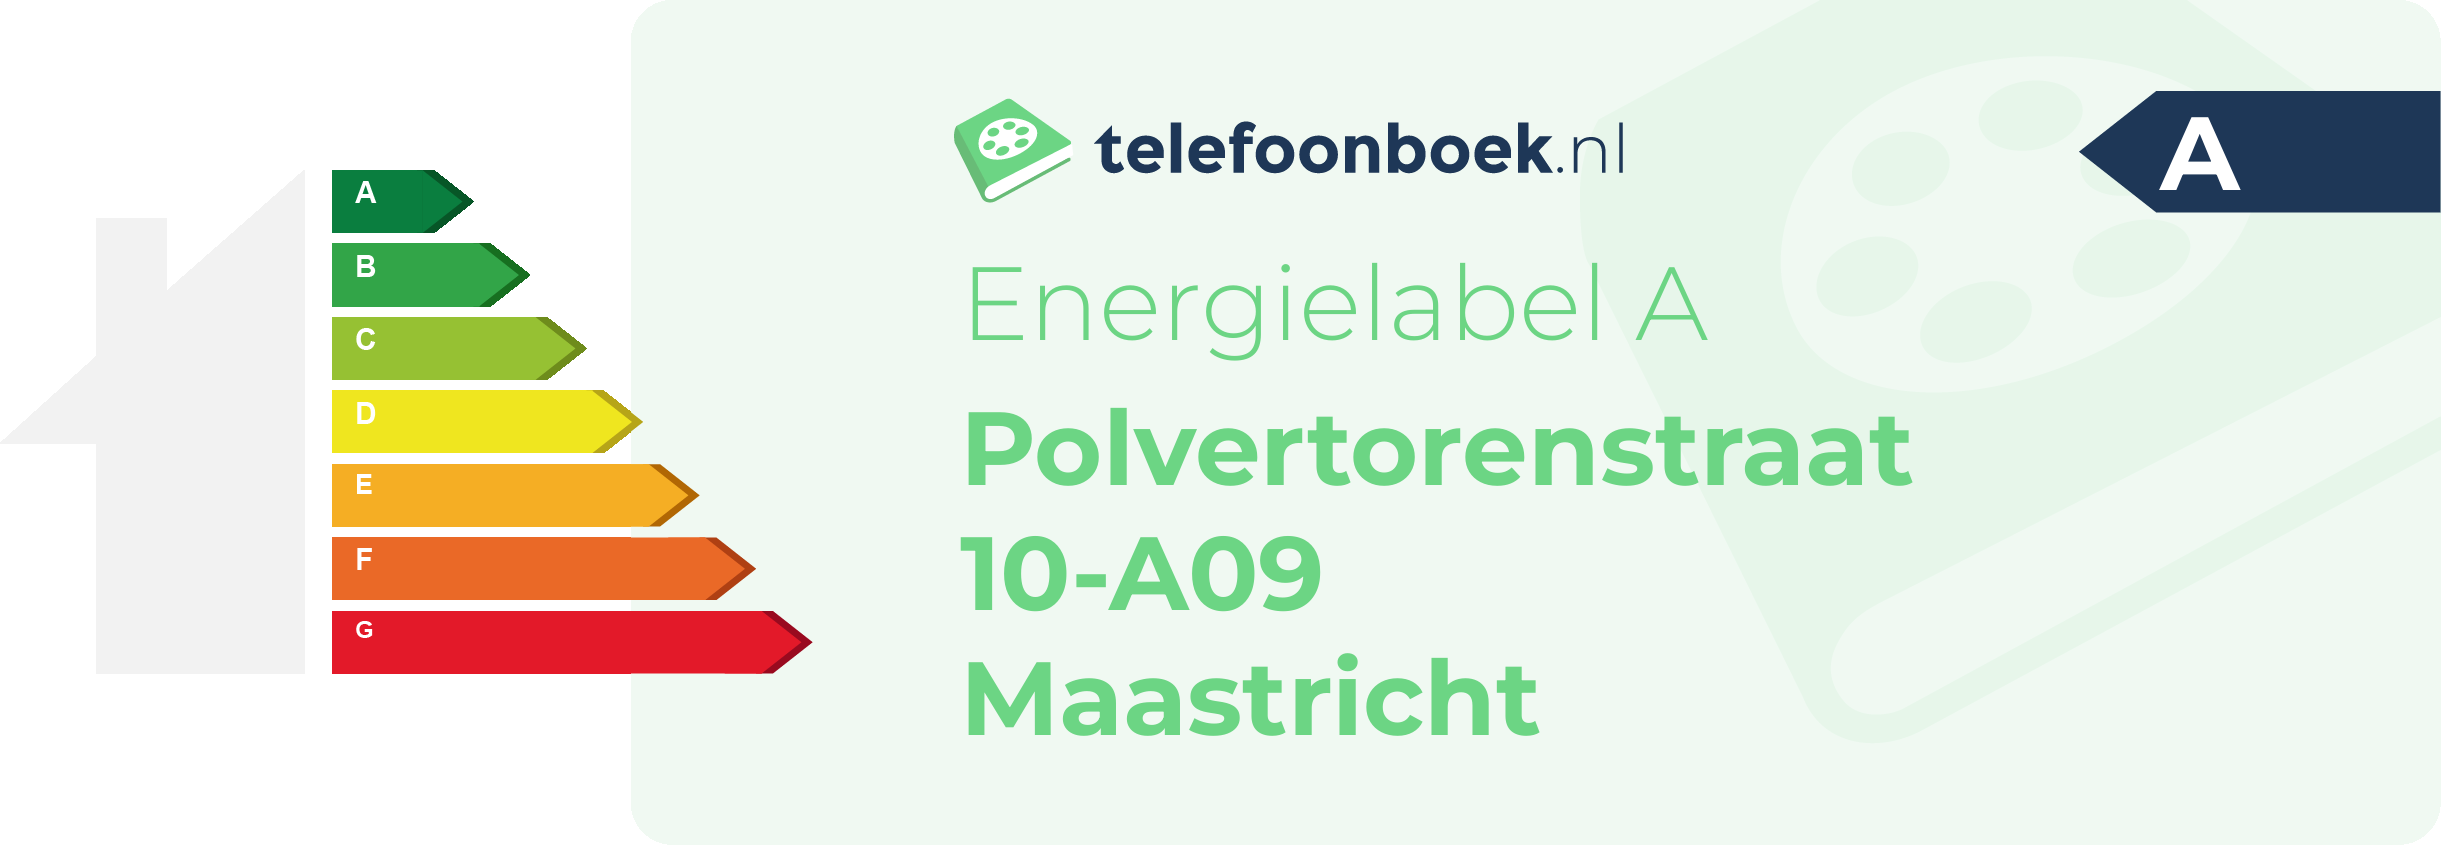 Energielabel Polvertorenstraat 10-A09 Maastricht